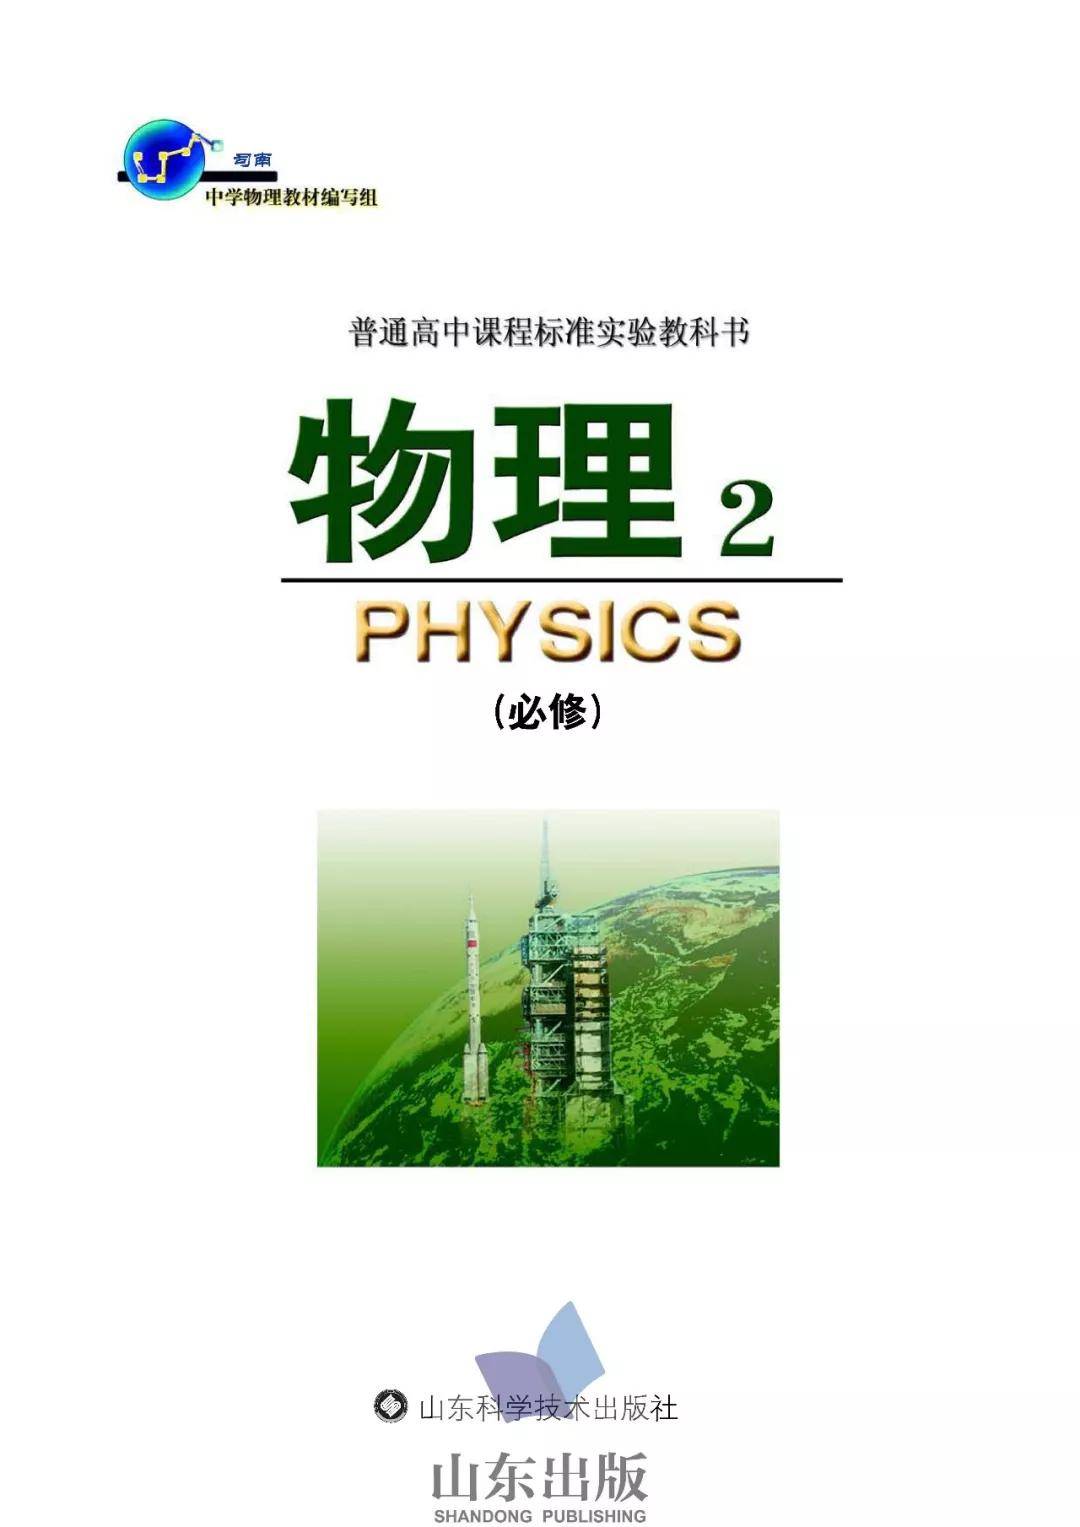 鲁科版(司南版)高中物理必修二电子课本(高清pdf版)